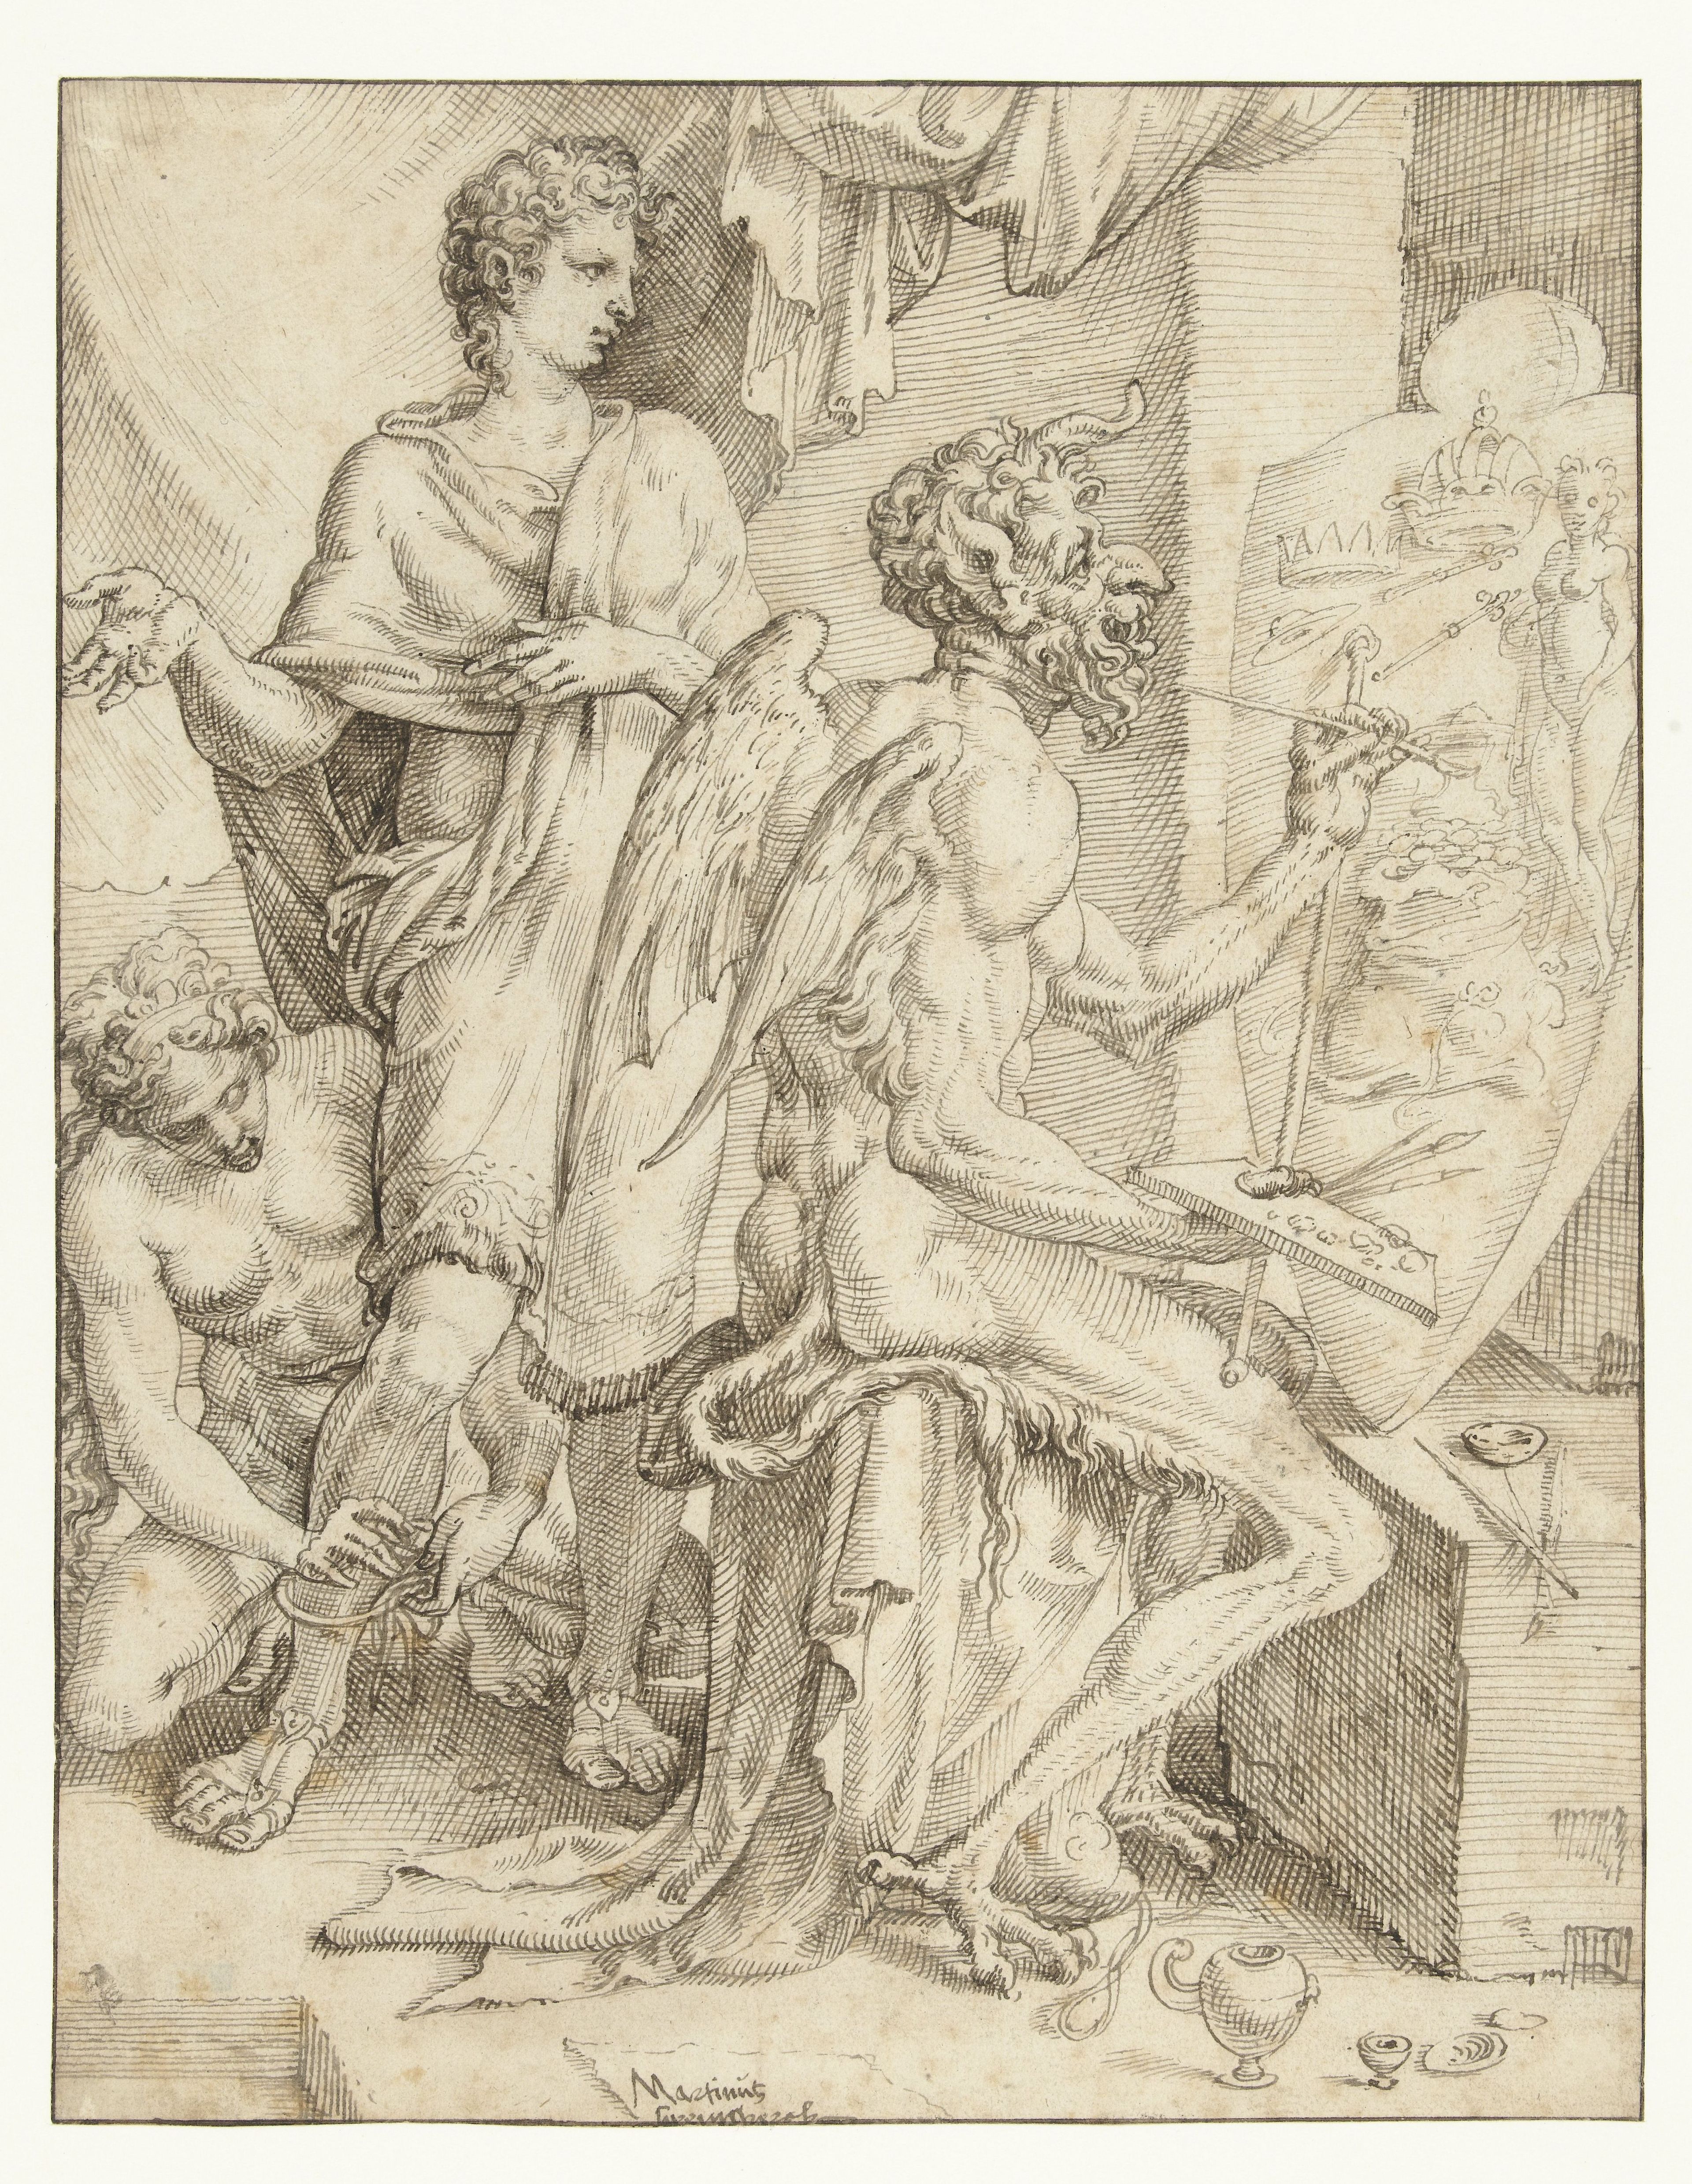 Maarten van Heemskerck, De duivel vervult het menselijk hart met begeerte naar rijkdom, macht en genot, 1550.